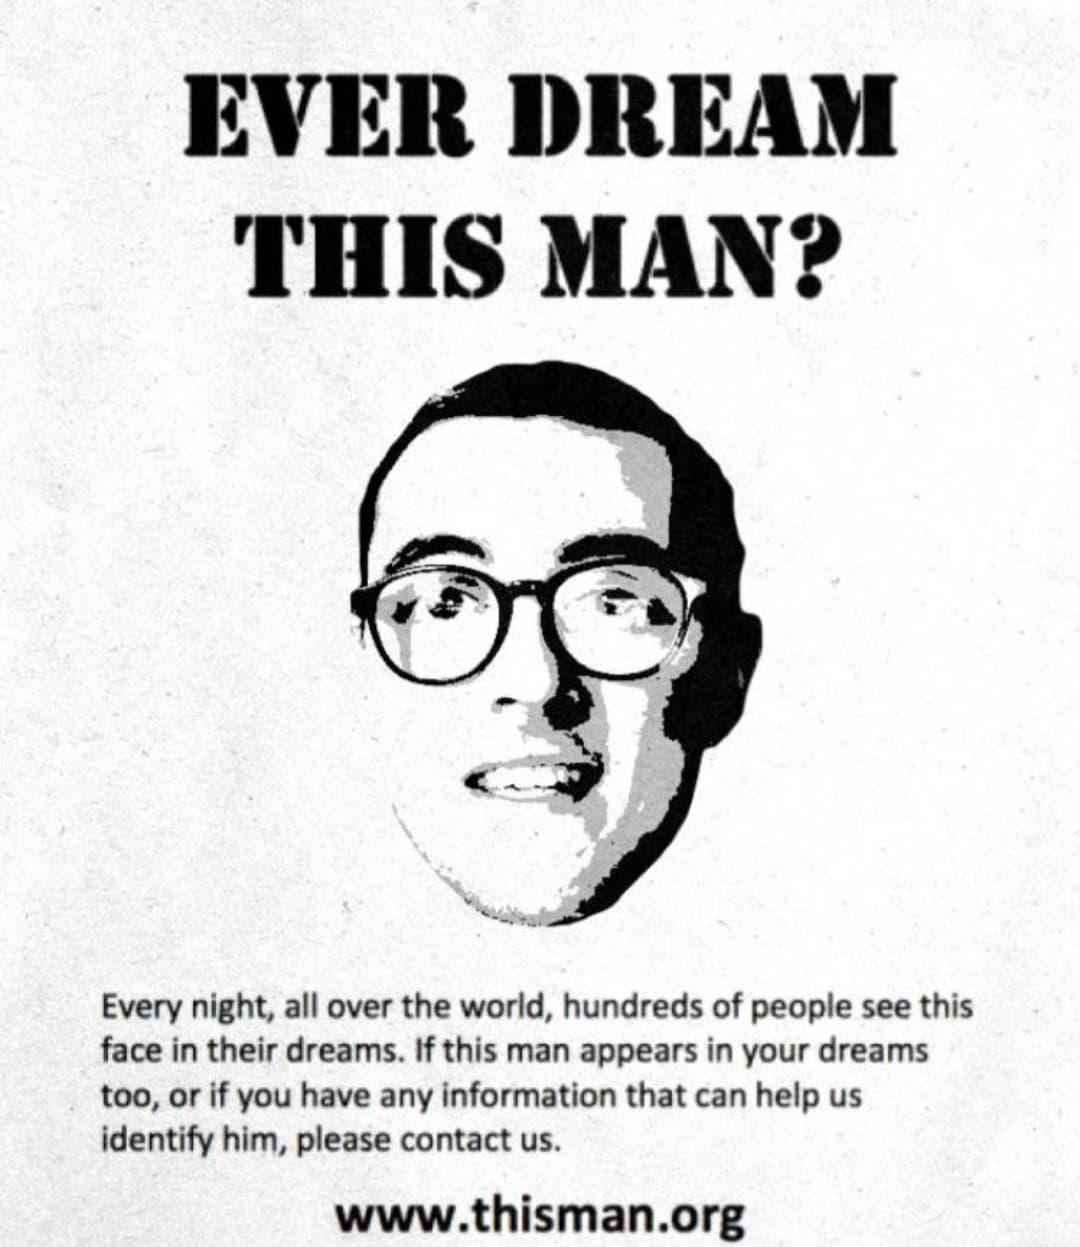 Hai mai sognato quest'uomo? 